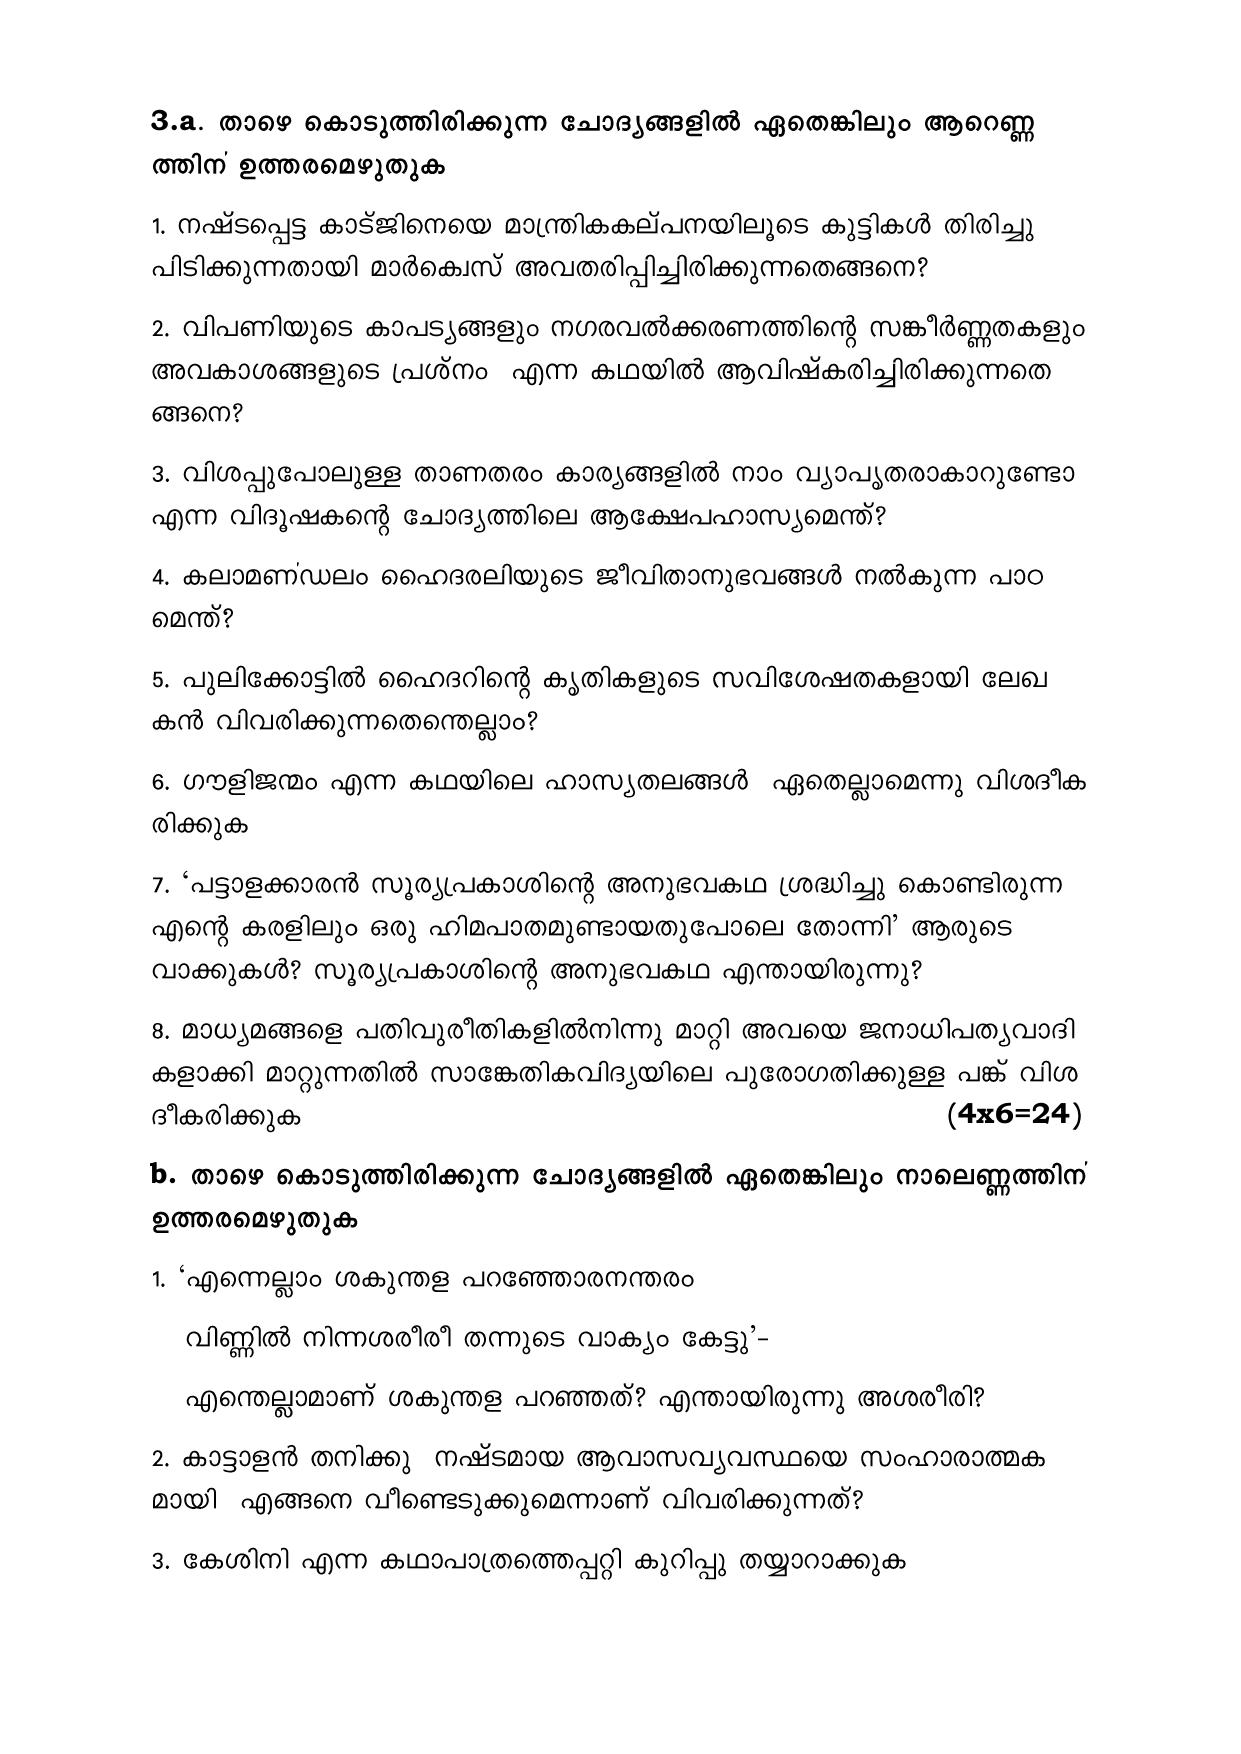 CBSE Class 12 Malayalam -Sample Paper 2019-20 - Page 3